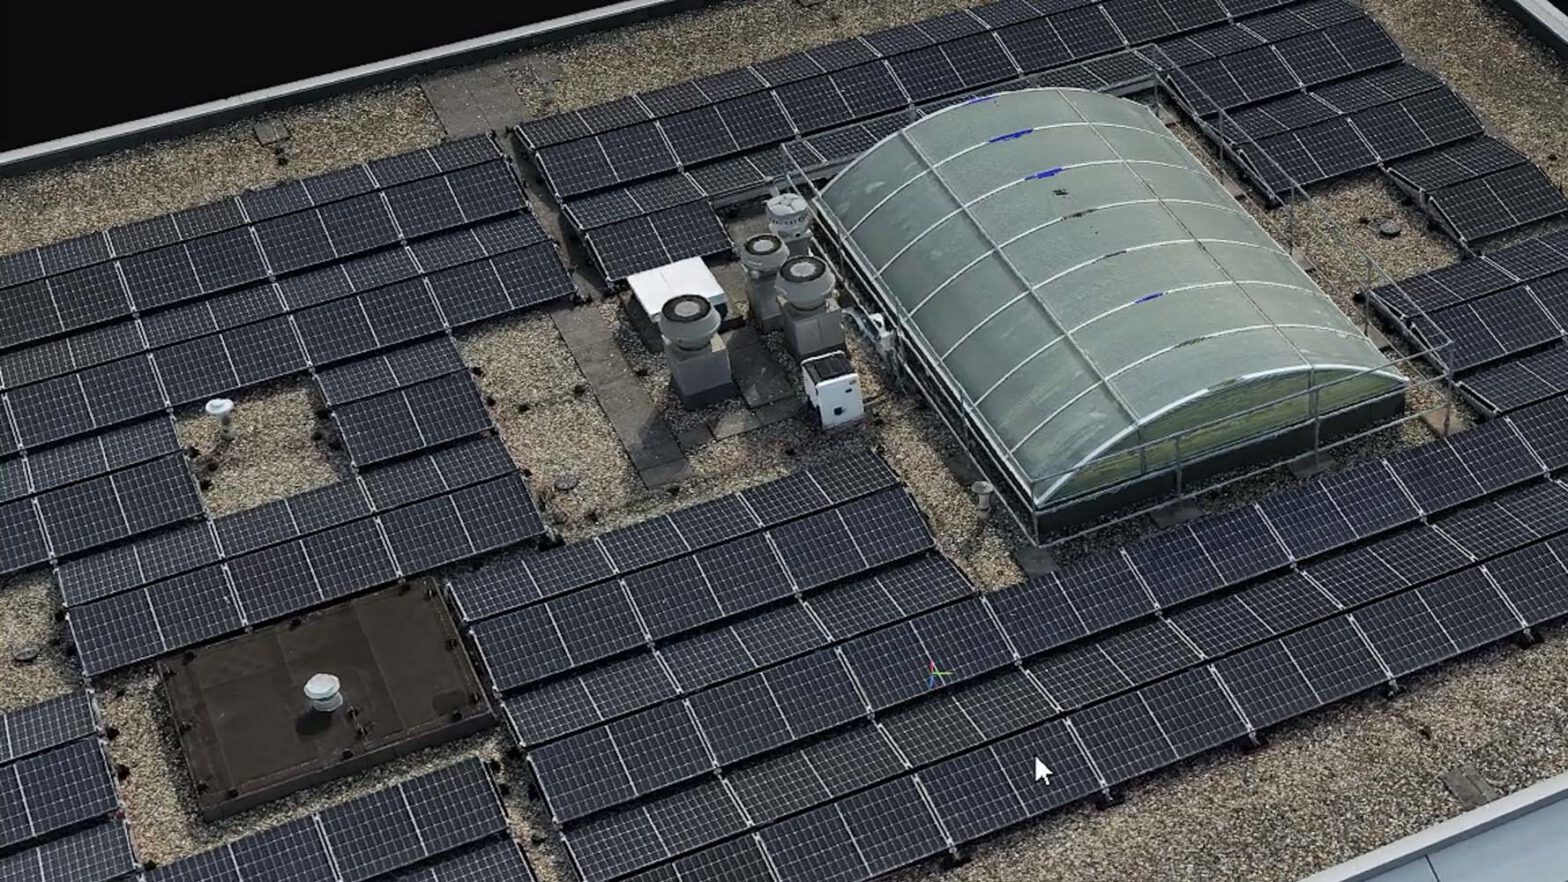 3D model van dak met zonnepanelen ingemeten door een drone